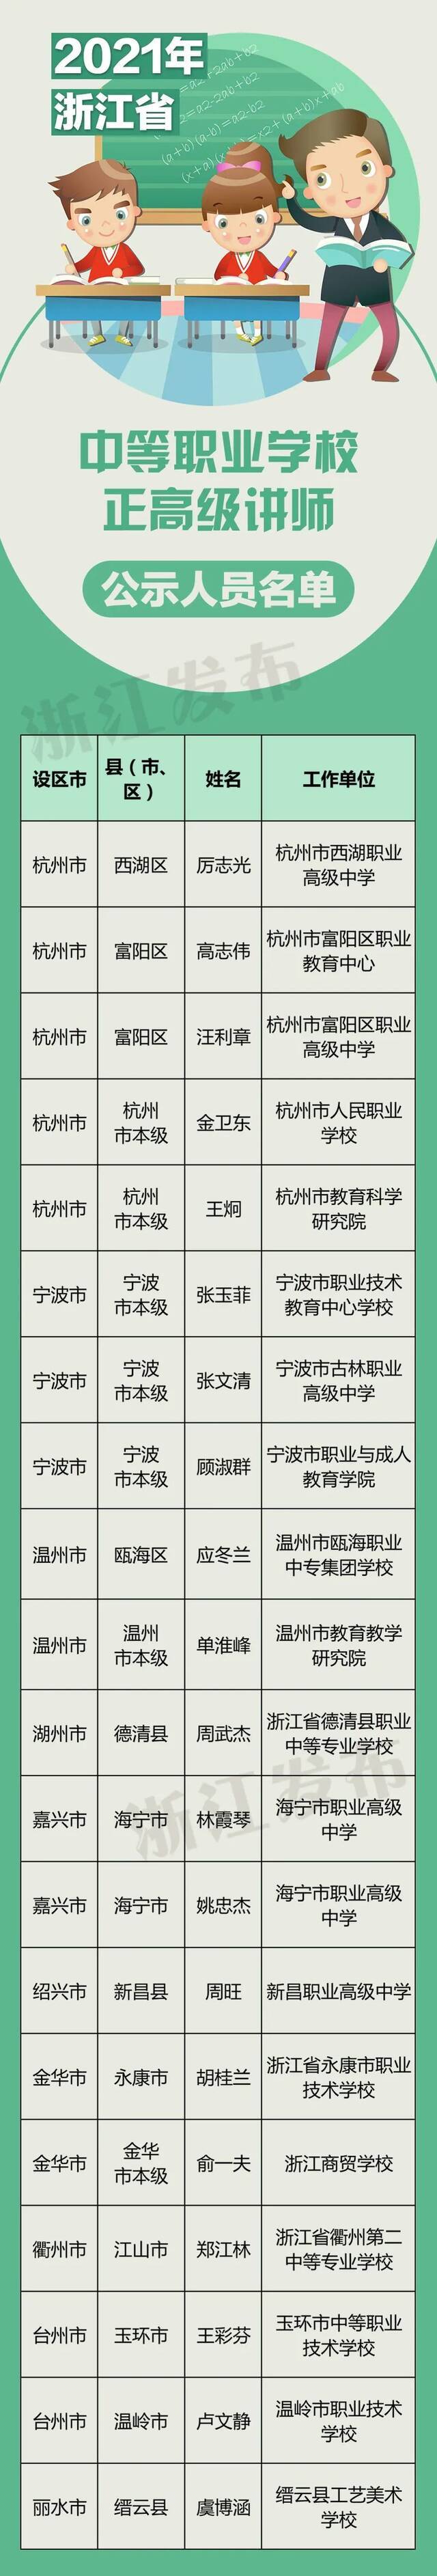 浙江135名中小学幼儿园正高级教师、20名中等职业学校正高级讲师名单公示